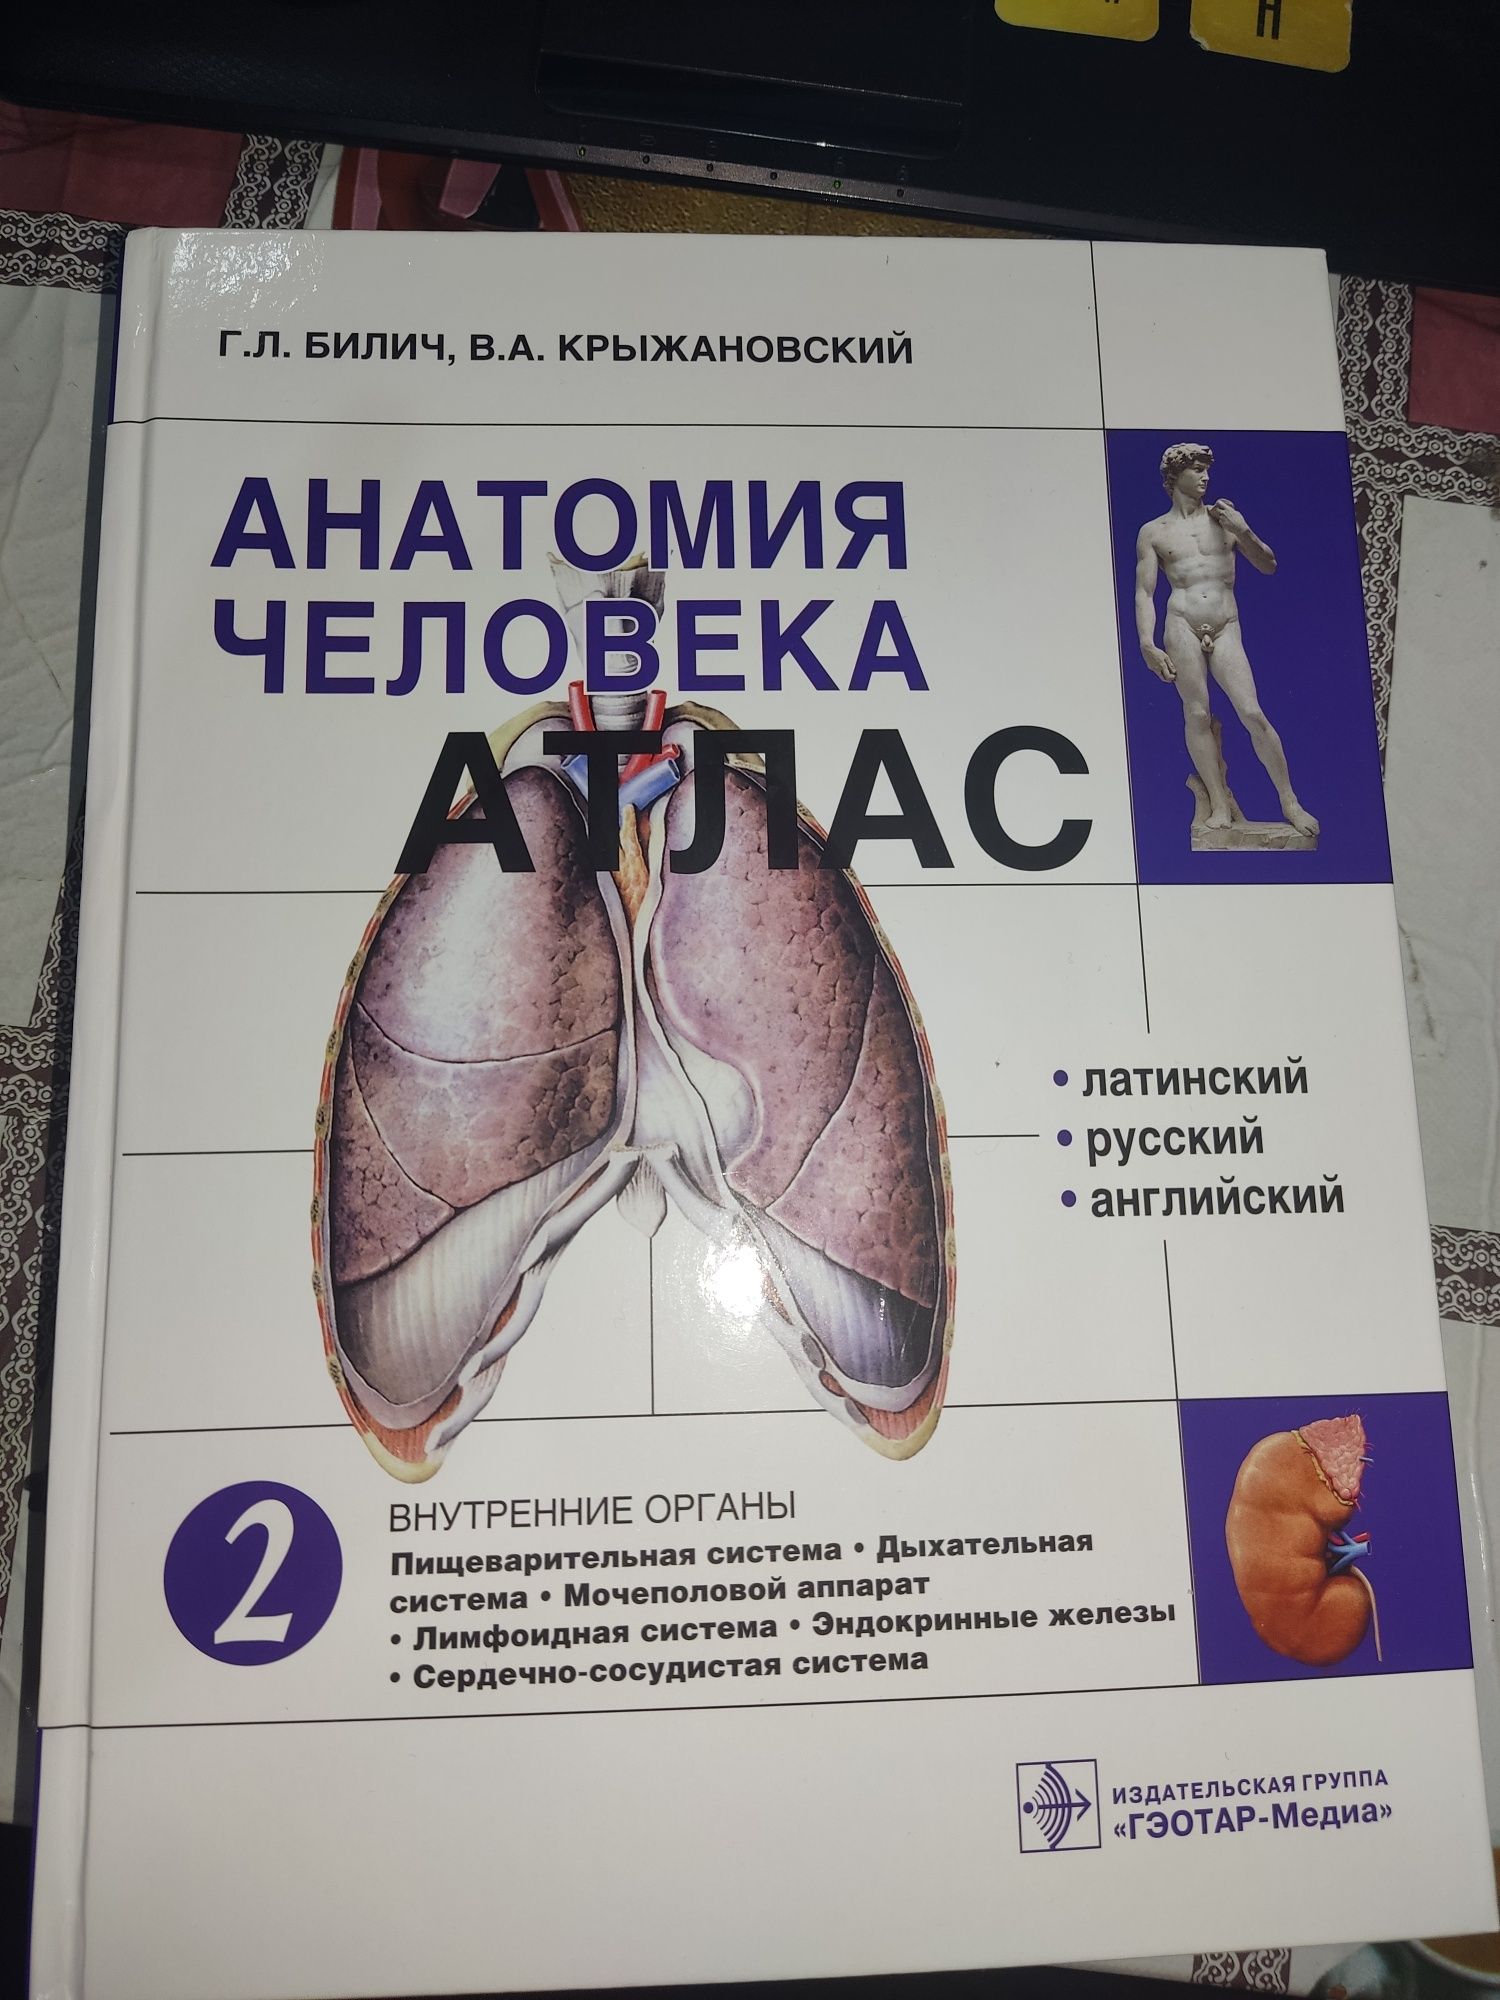 Атлас по анатомии 2 том авторы Г.Л.Билич, В.А. Крыжановский оригина